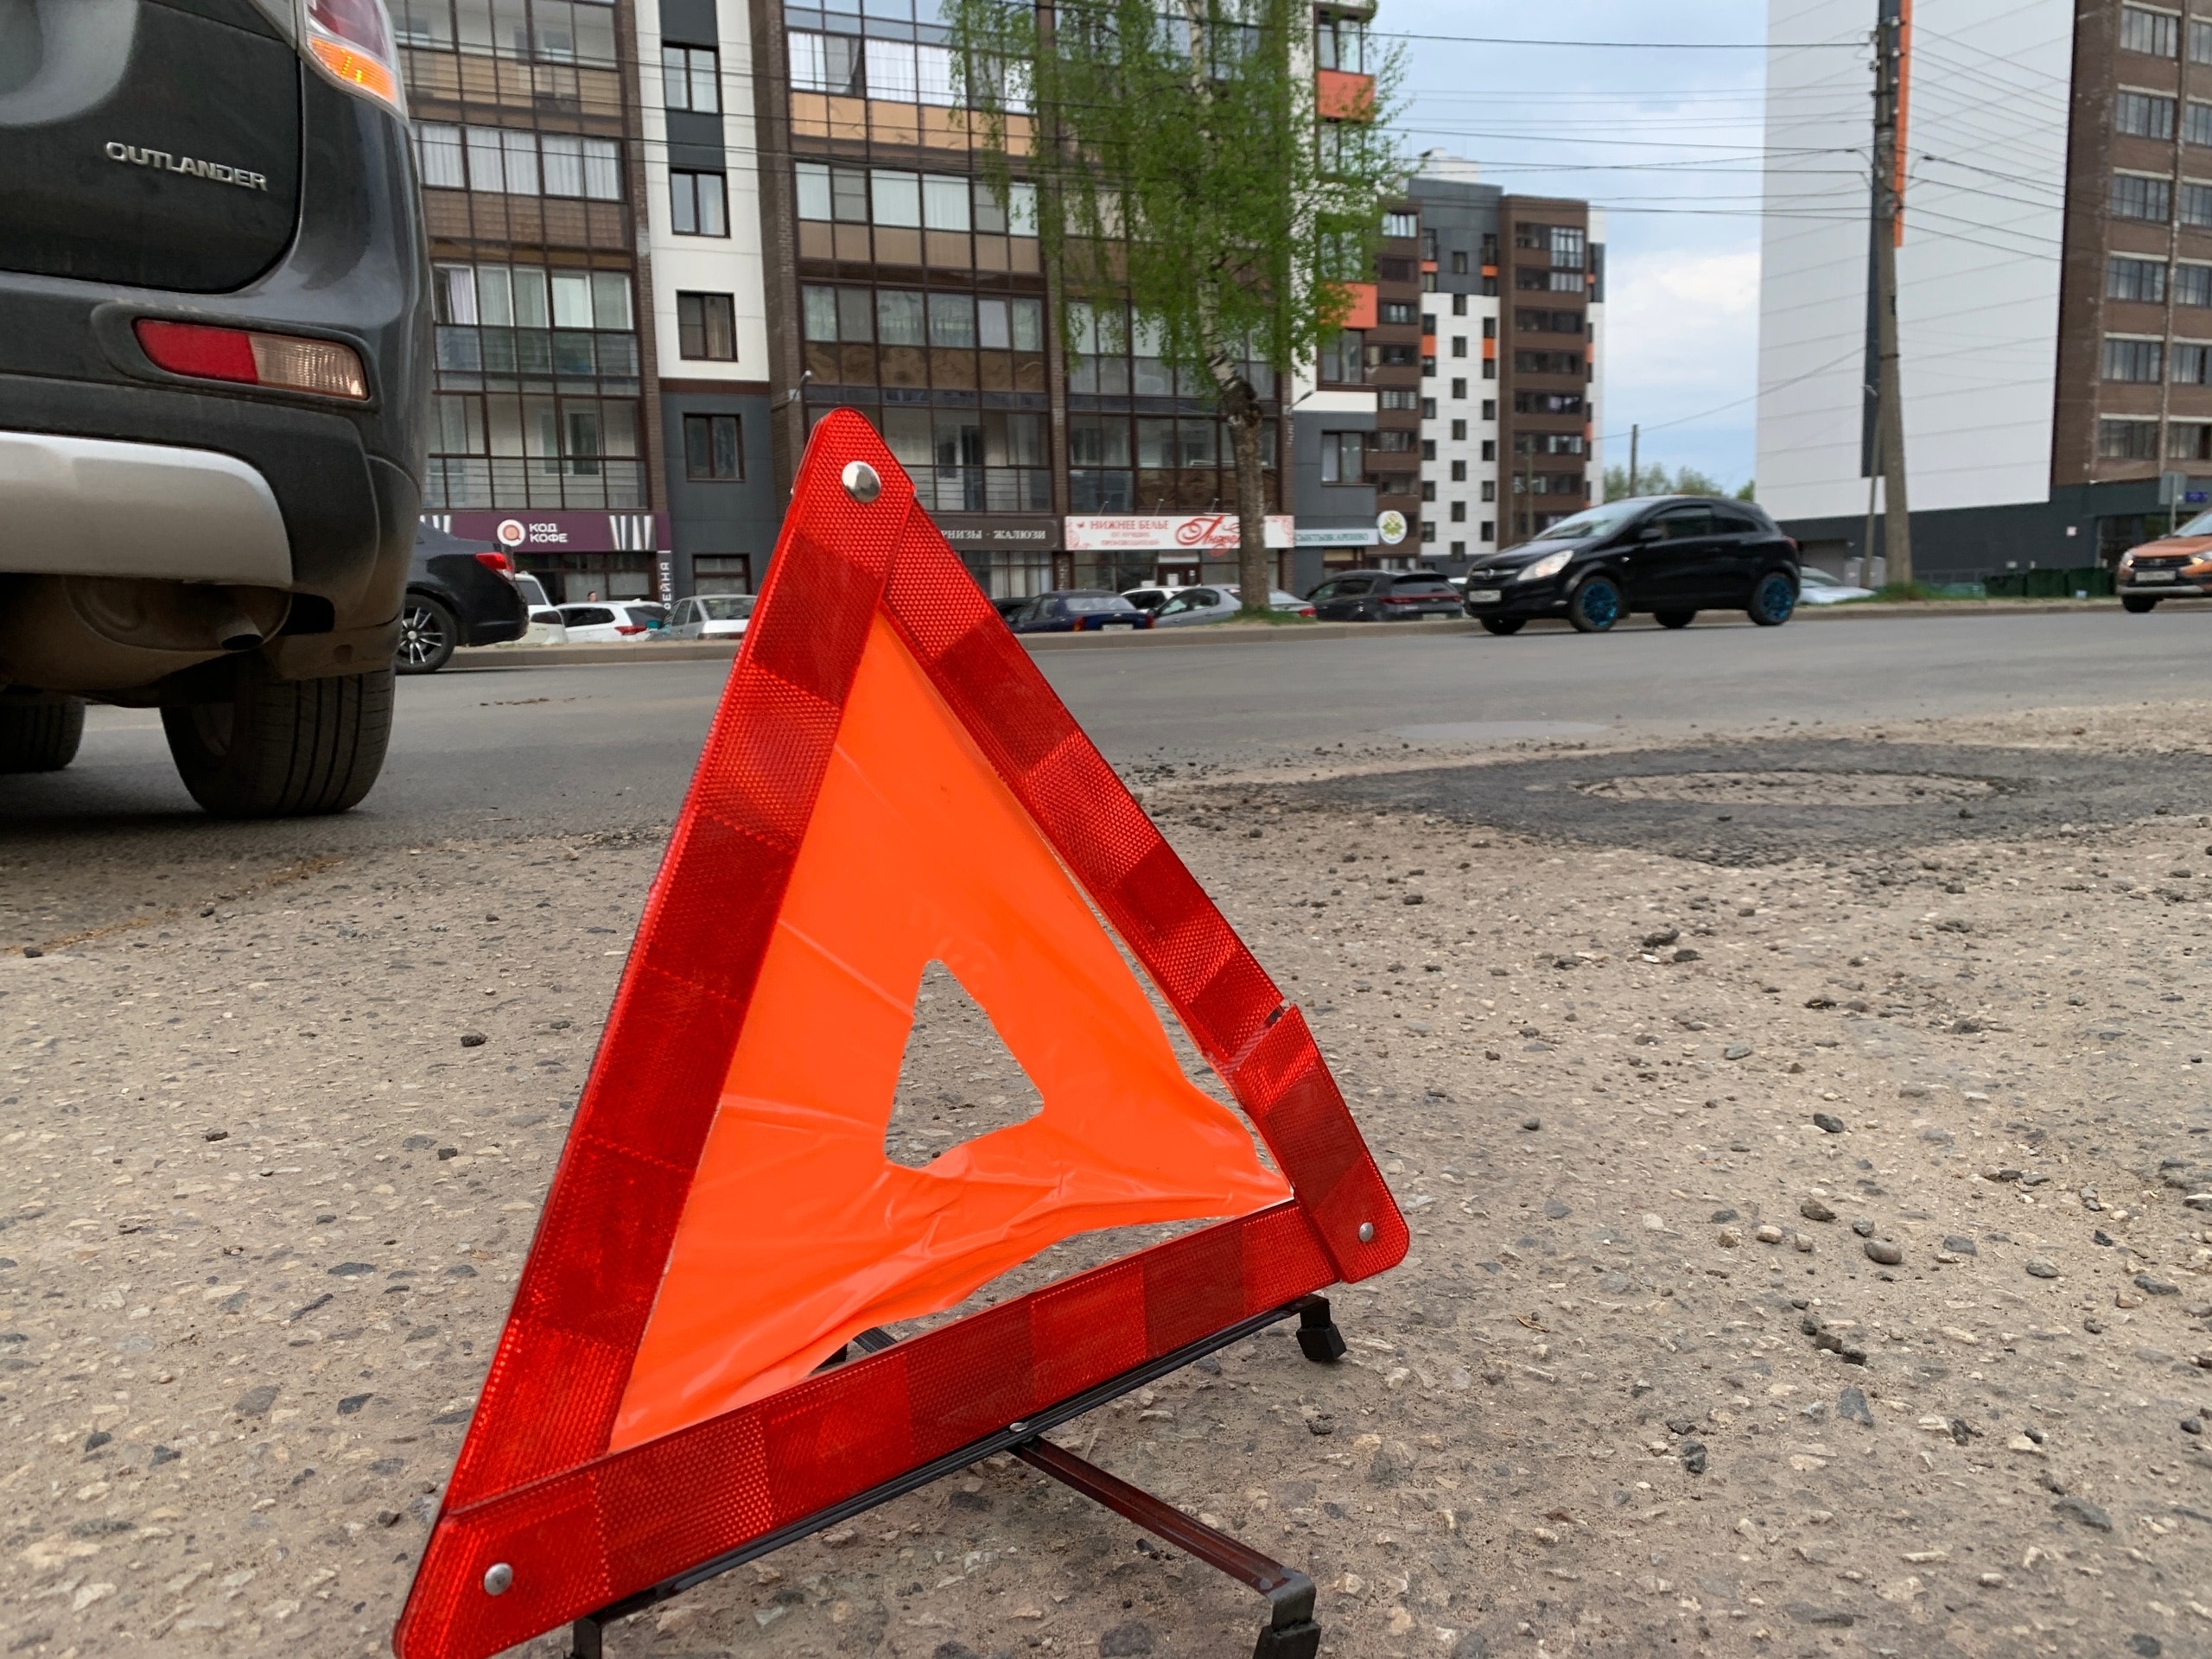 Пешеход нарушитель попал под колеса автомобиля в Сыктывкаре